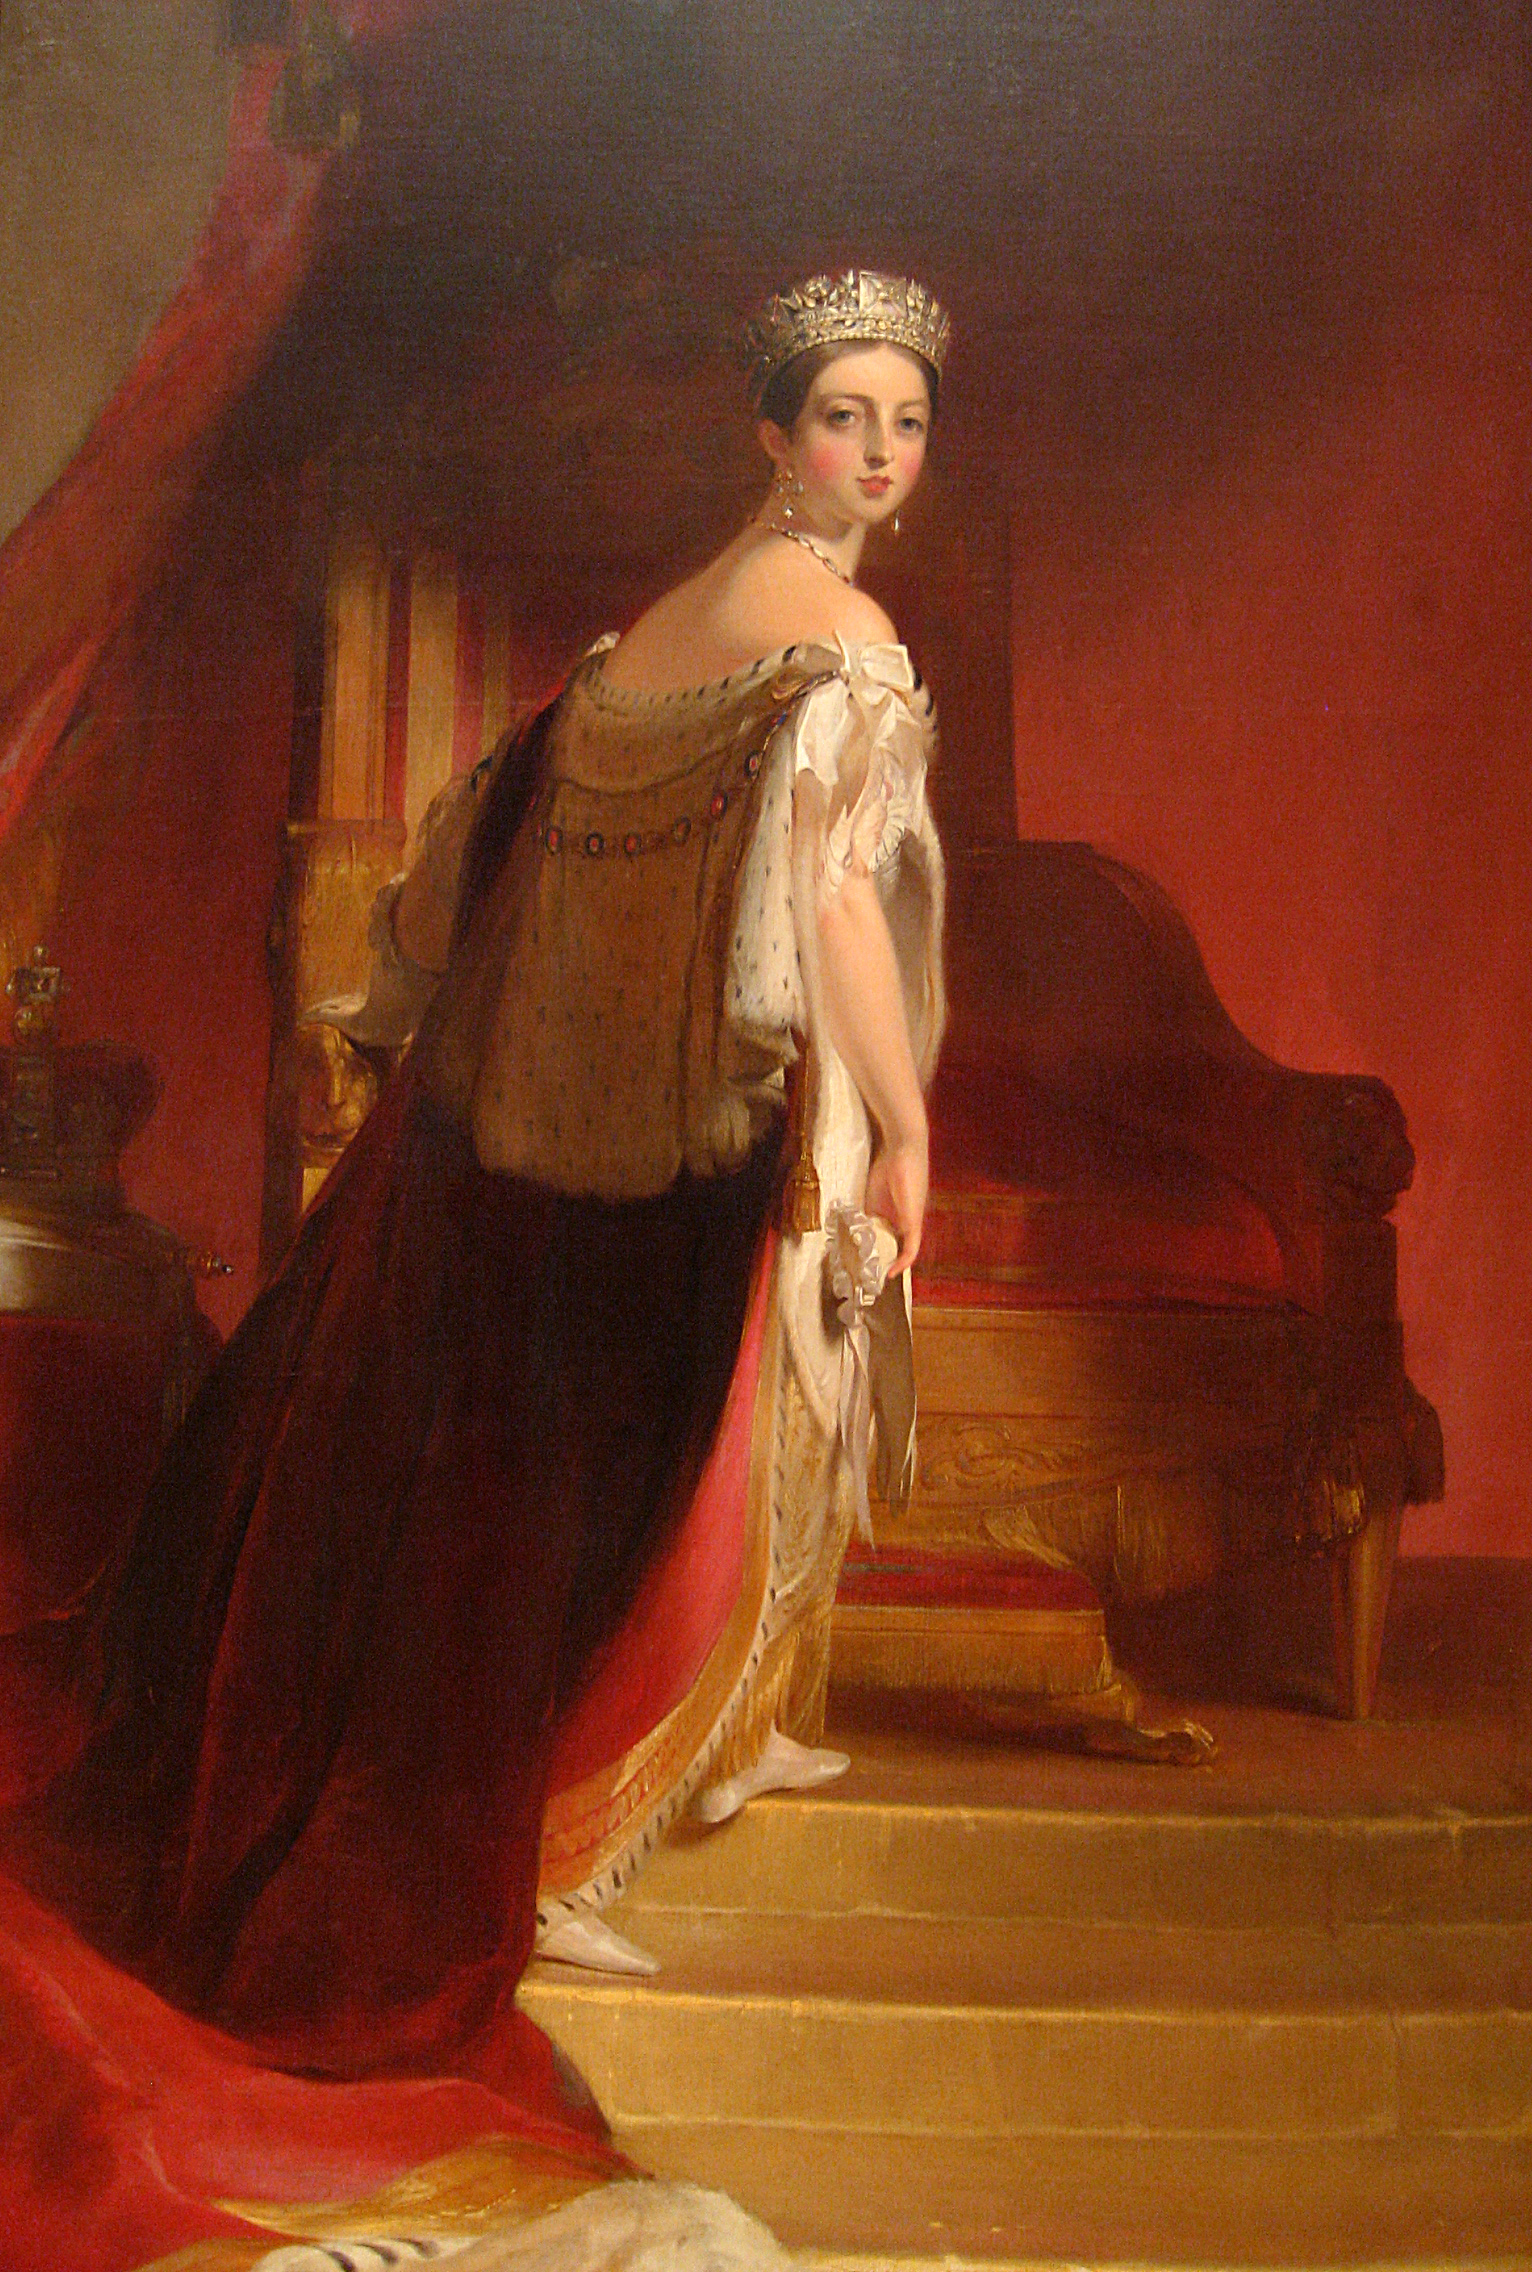 Queen Victoria, 1838